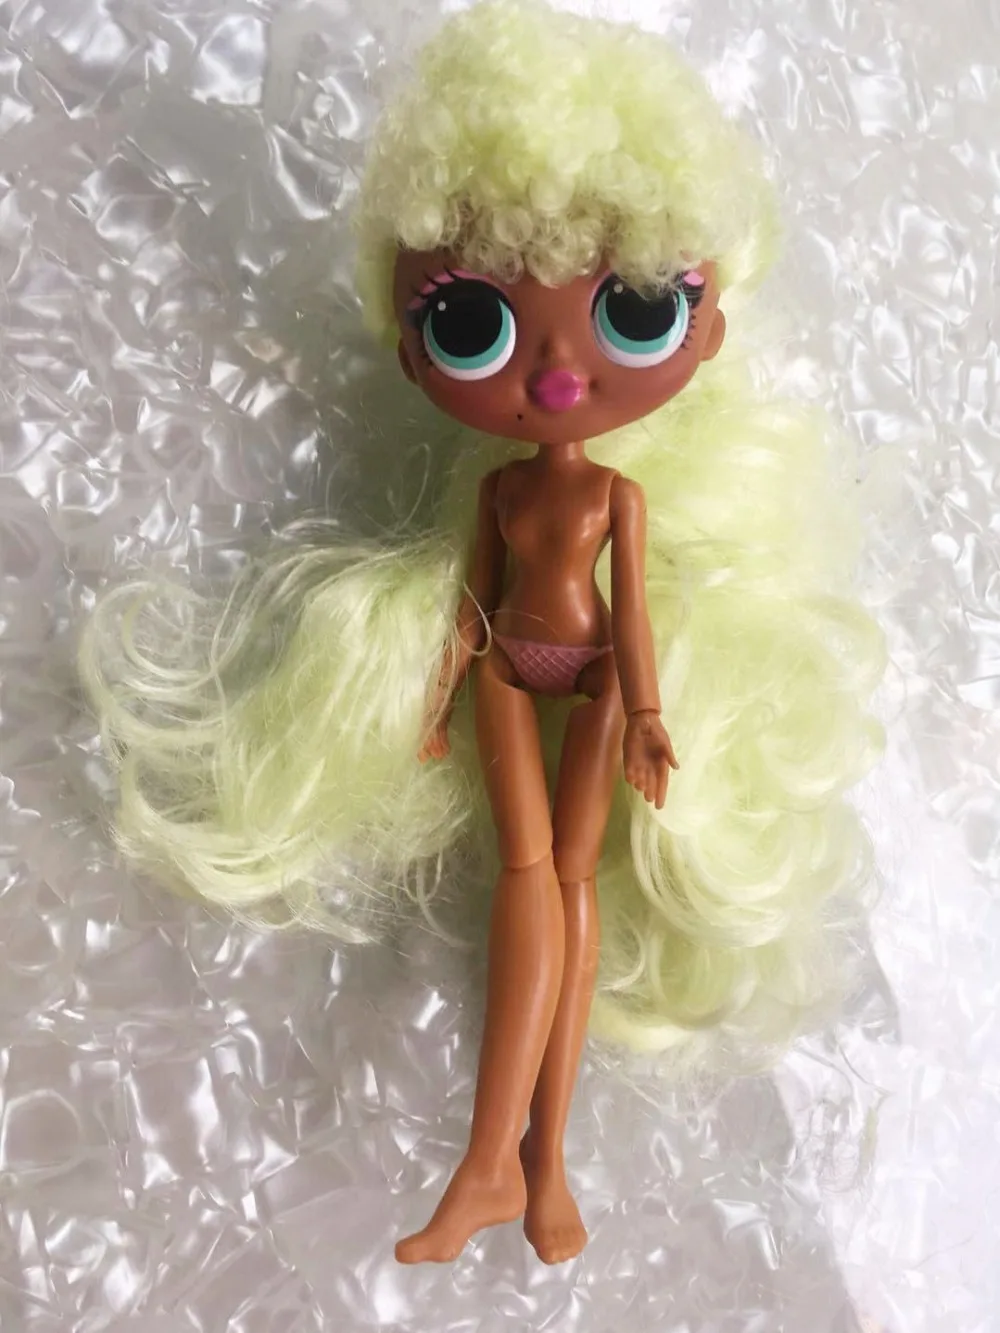 Модный игрушечный парик с головой Большой Сестры кукла-девочка игрушка волосы DIY кукла игрушка часть девушка мода DIY туалетный игрушечный парик кукла 1/6 парики